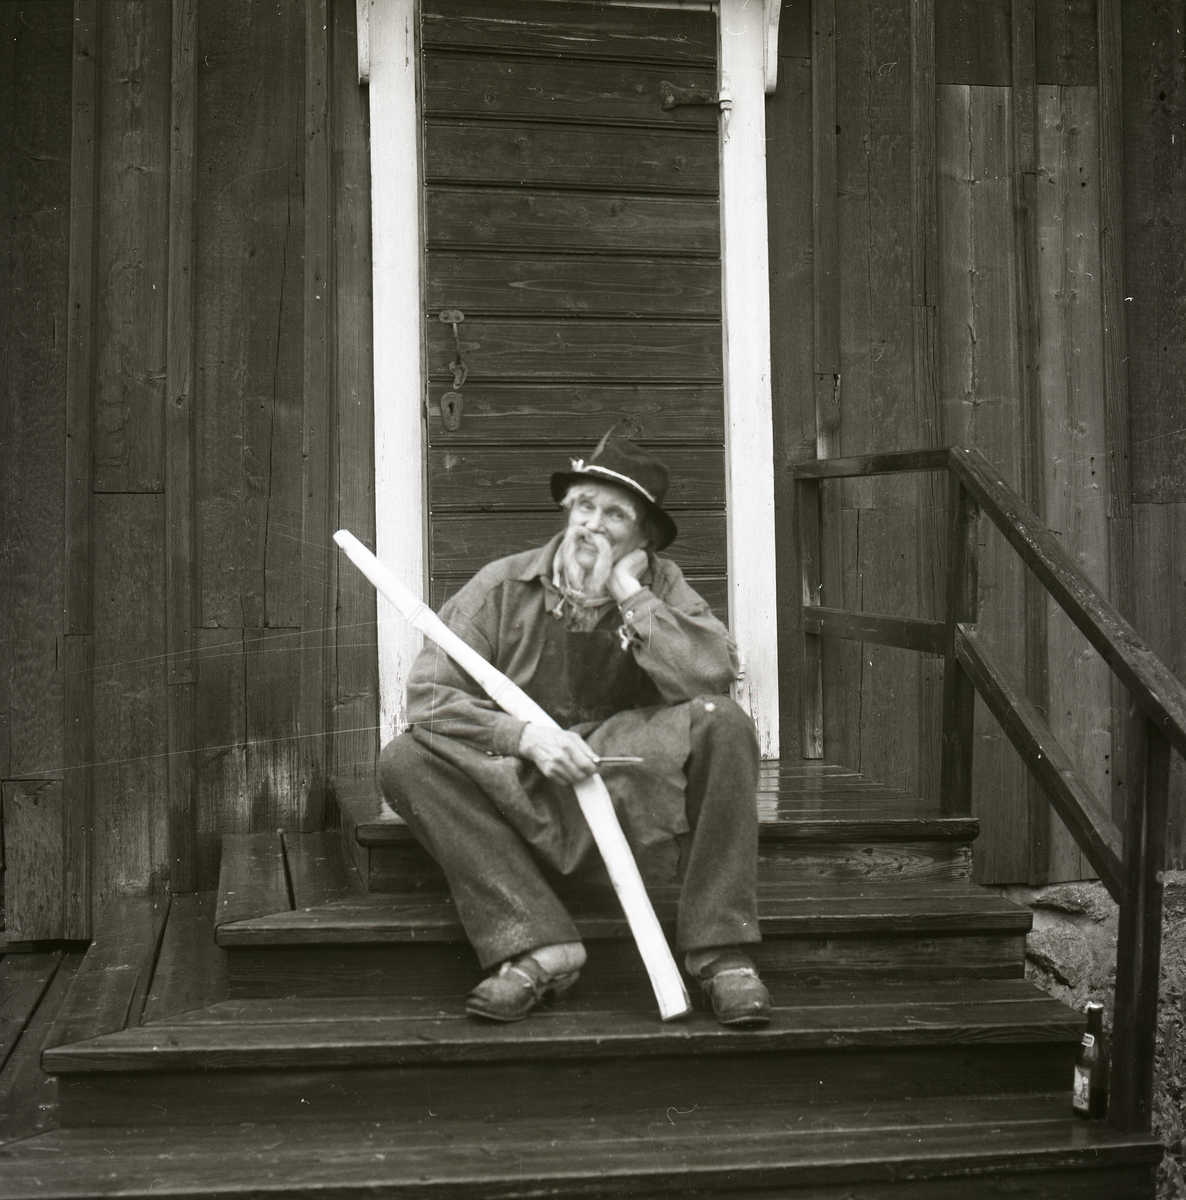 På en trappa till en timrad byggnad sitter en utklädd man med huvudbonad, förkläde, träskor och en lång mustach. Han håller i ett träföremål och en kniv. Bakom honom finns en dörrkarm samt en dörr med handtag, nyckelhål och beslag. Trappan har ett räcke och på det nedersta trappsteget står en glasflaska, Hembygdsbyn 1980.